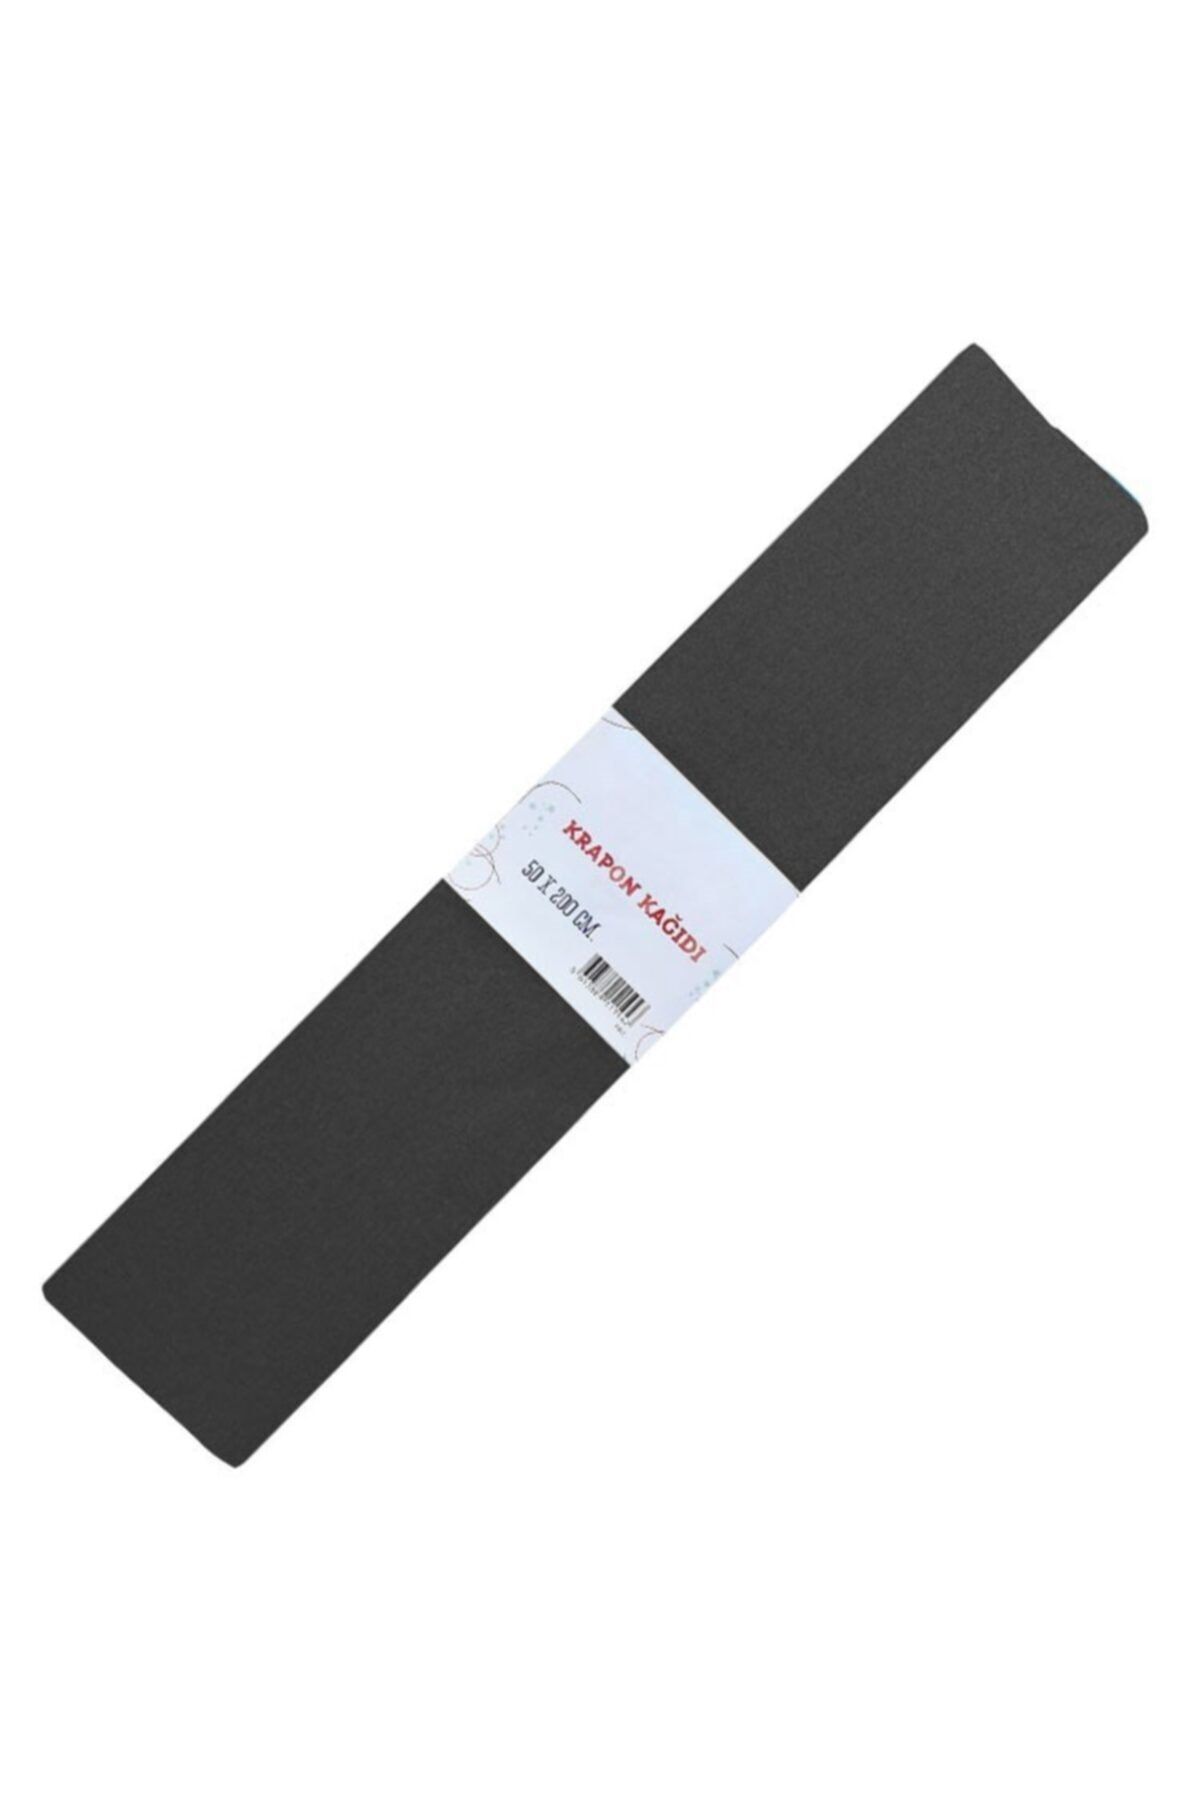 Gıpta Renkli Krapon Kağıdı 50cm X 2mt Siyah (10 Lu Paket) 9135